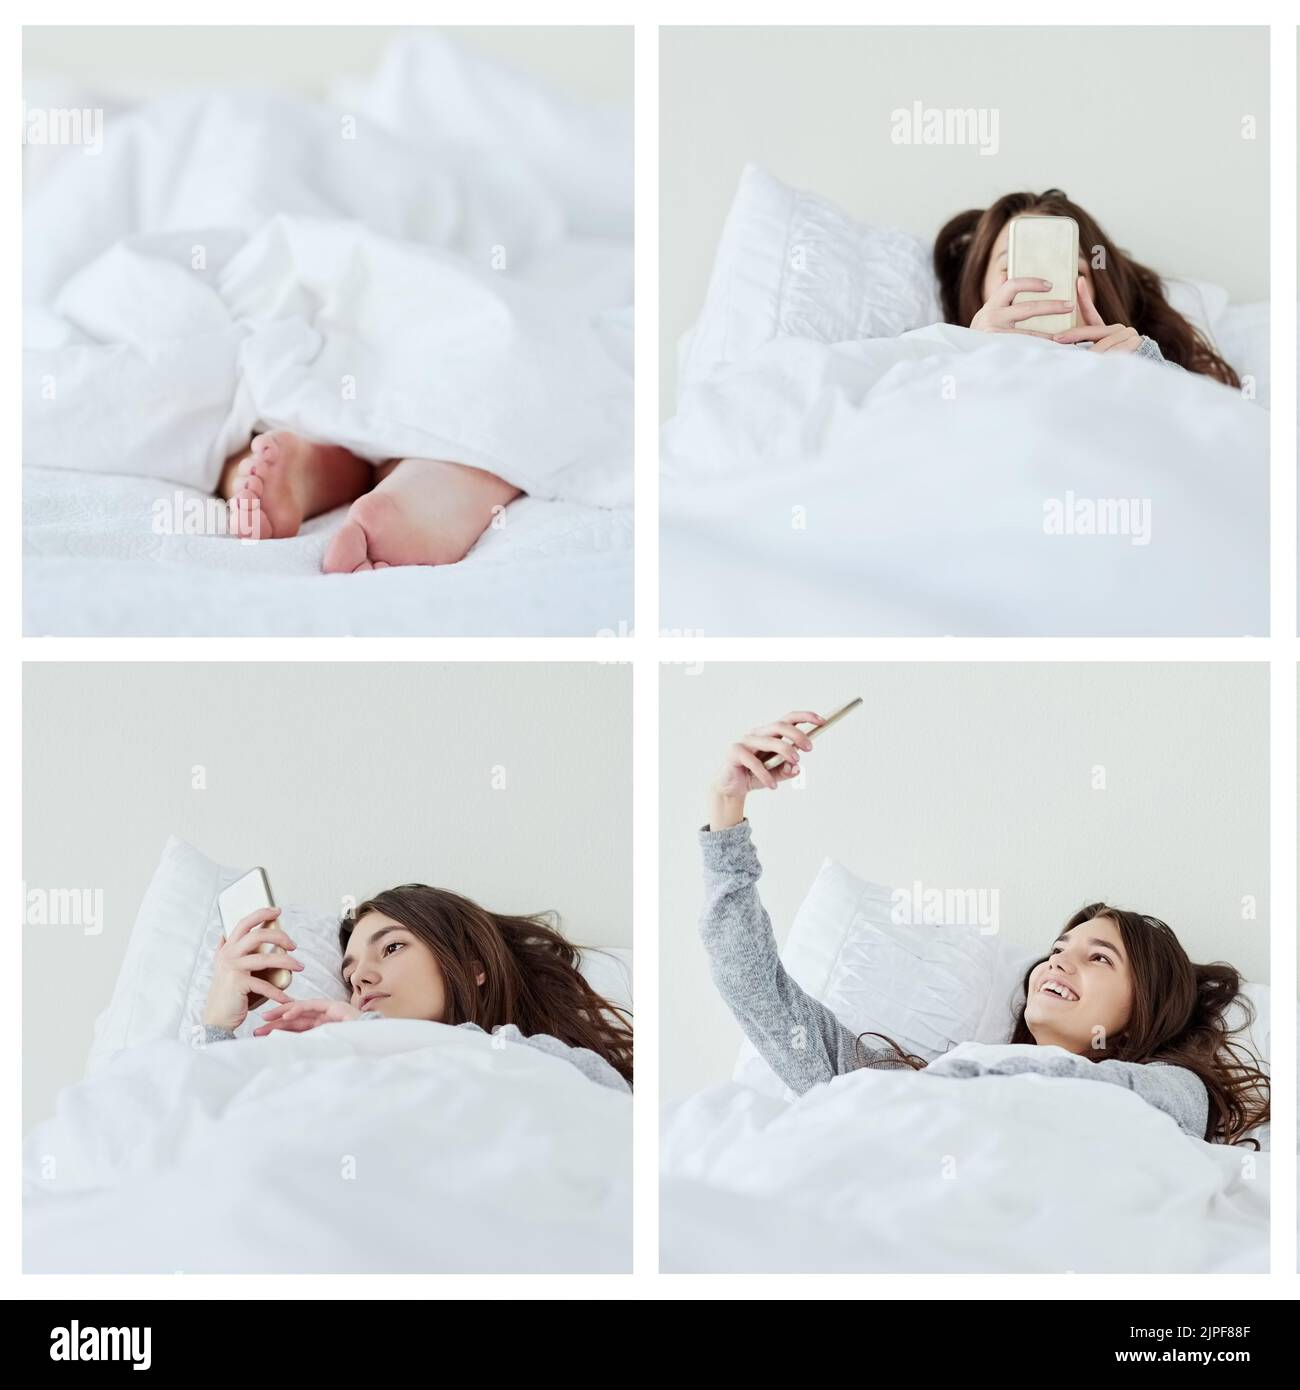 Solo io e il letto oggi. Ripresa composita di una giovane donna attraente occupata con il suo telefono mentre sdraiata a letto a casa durante il giorno. Foto Stock